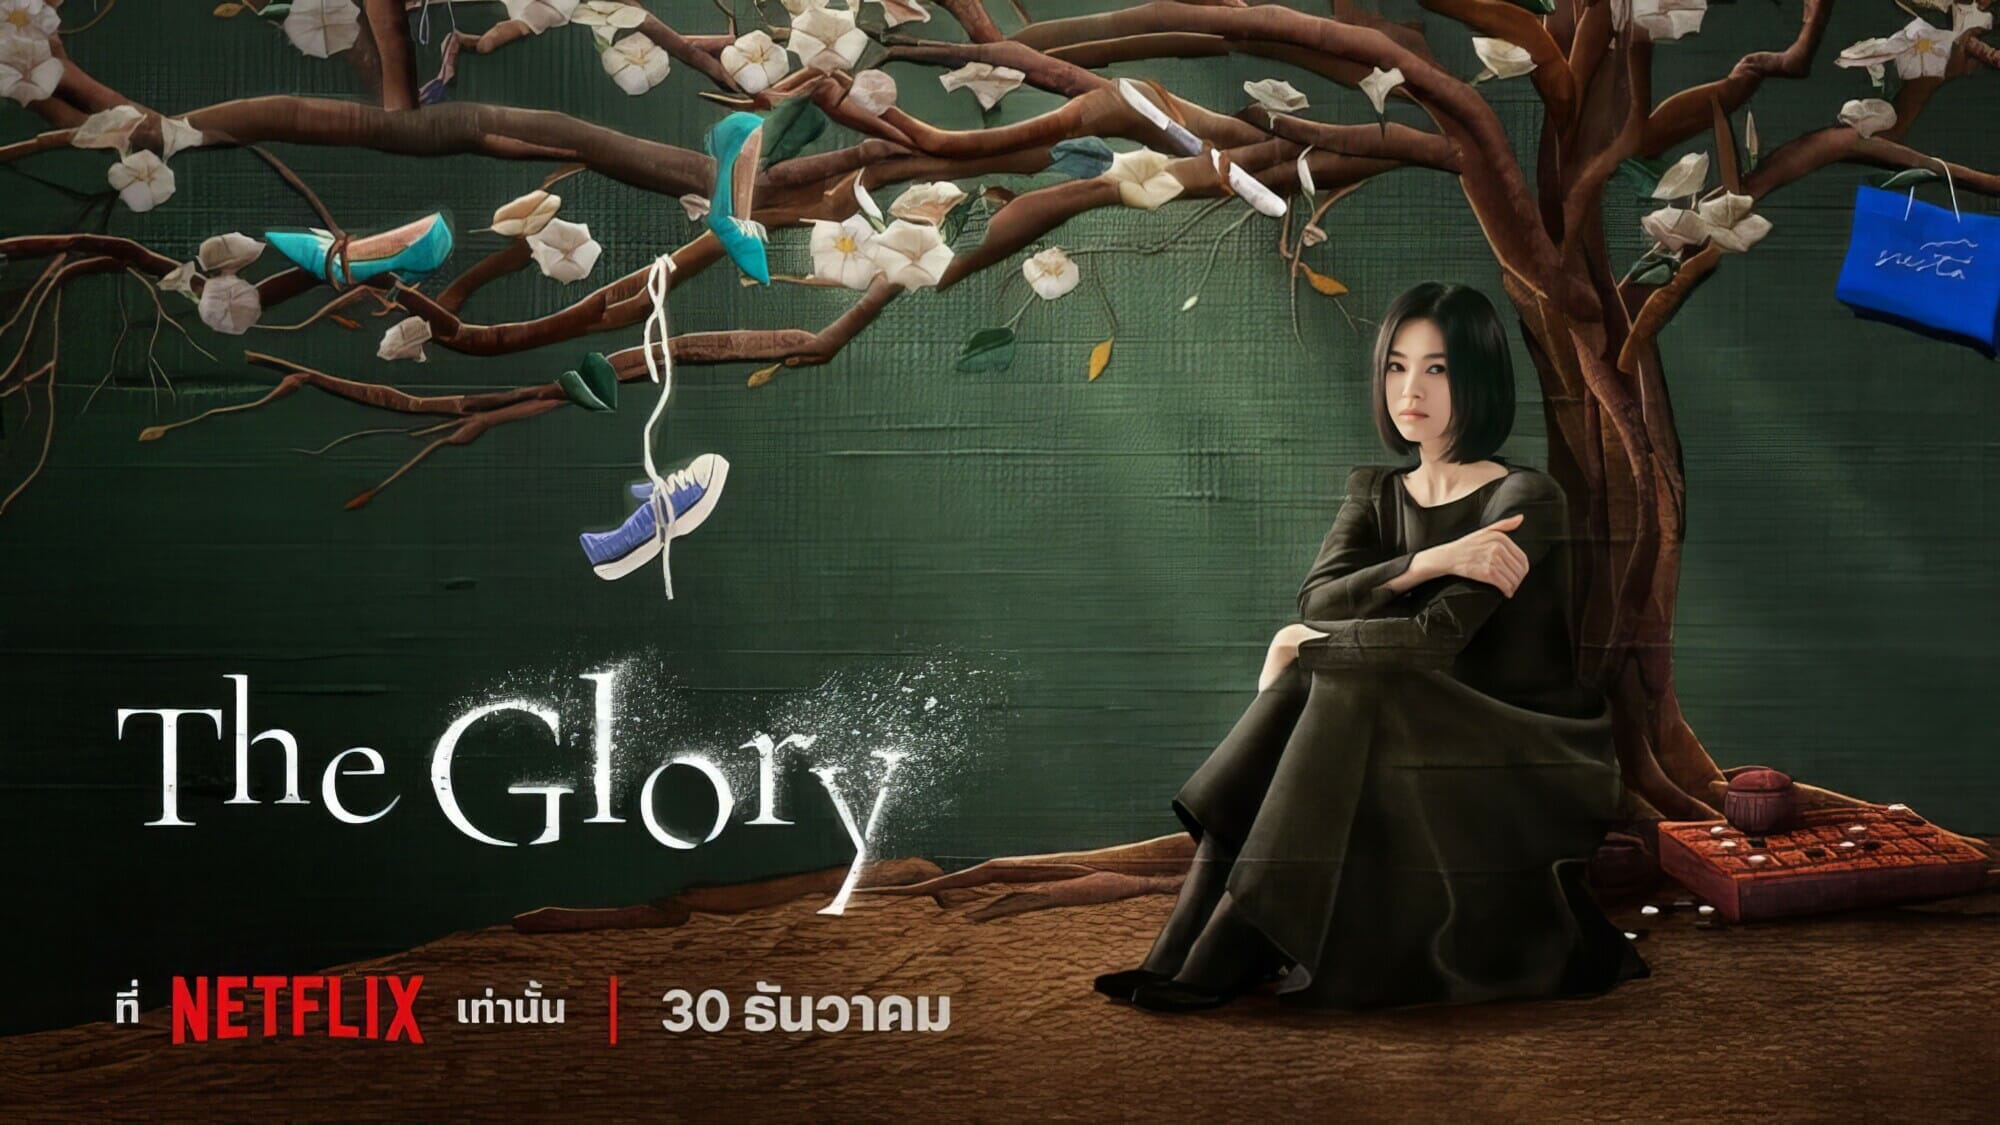 “ซงฮเยคโย” หวนคืนจอใน “The Glory” มหากาพย์การแก้แค้นอันแสนโหดเหี้ยมและเปี่ยมเสน่ห์ 30 ธันวาคมนี้ที่ Netflix